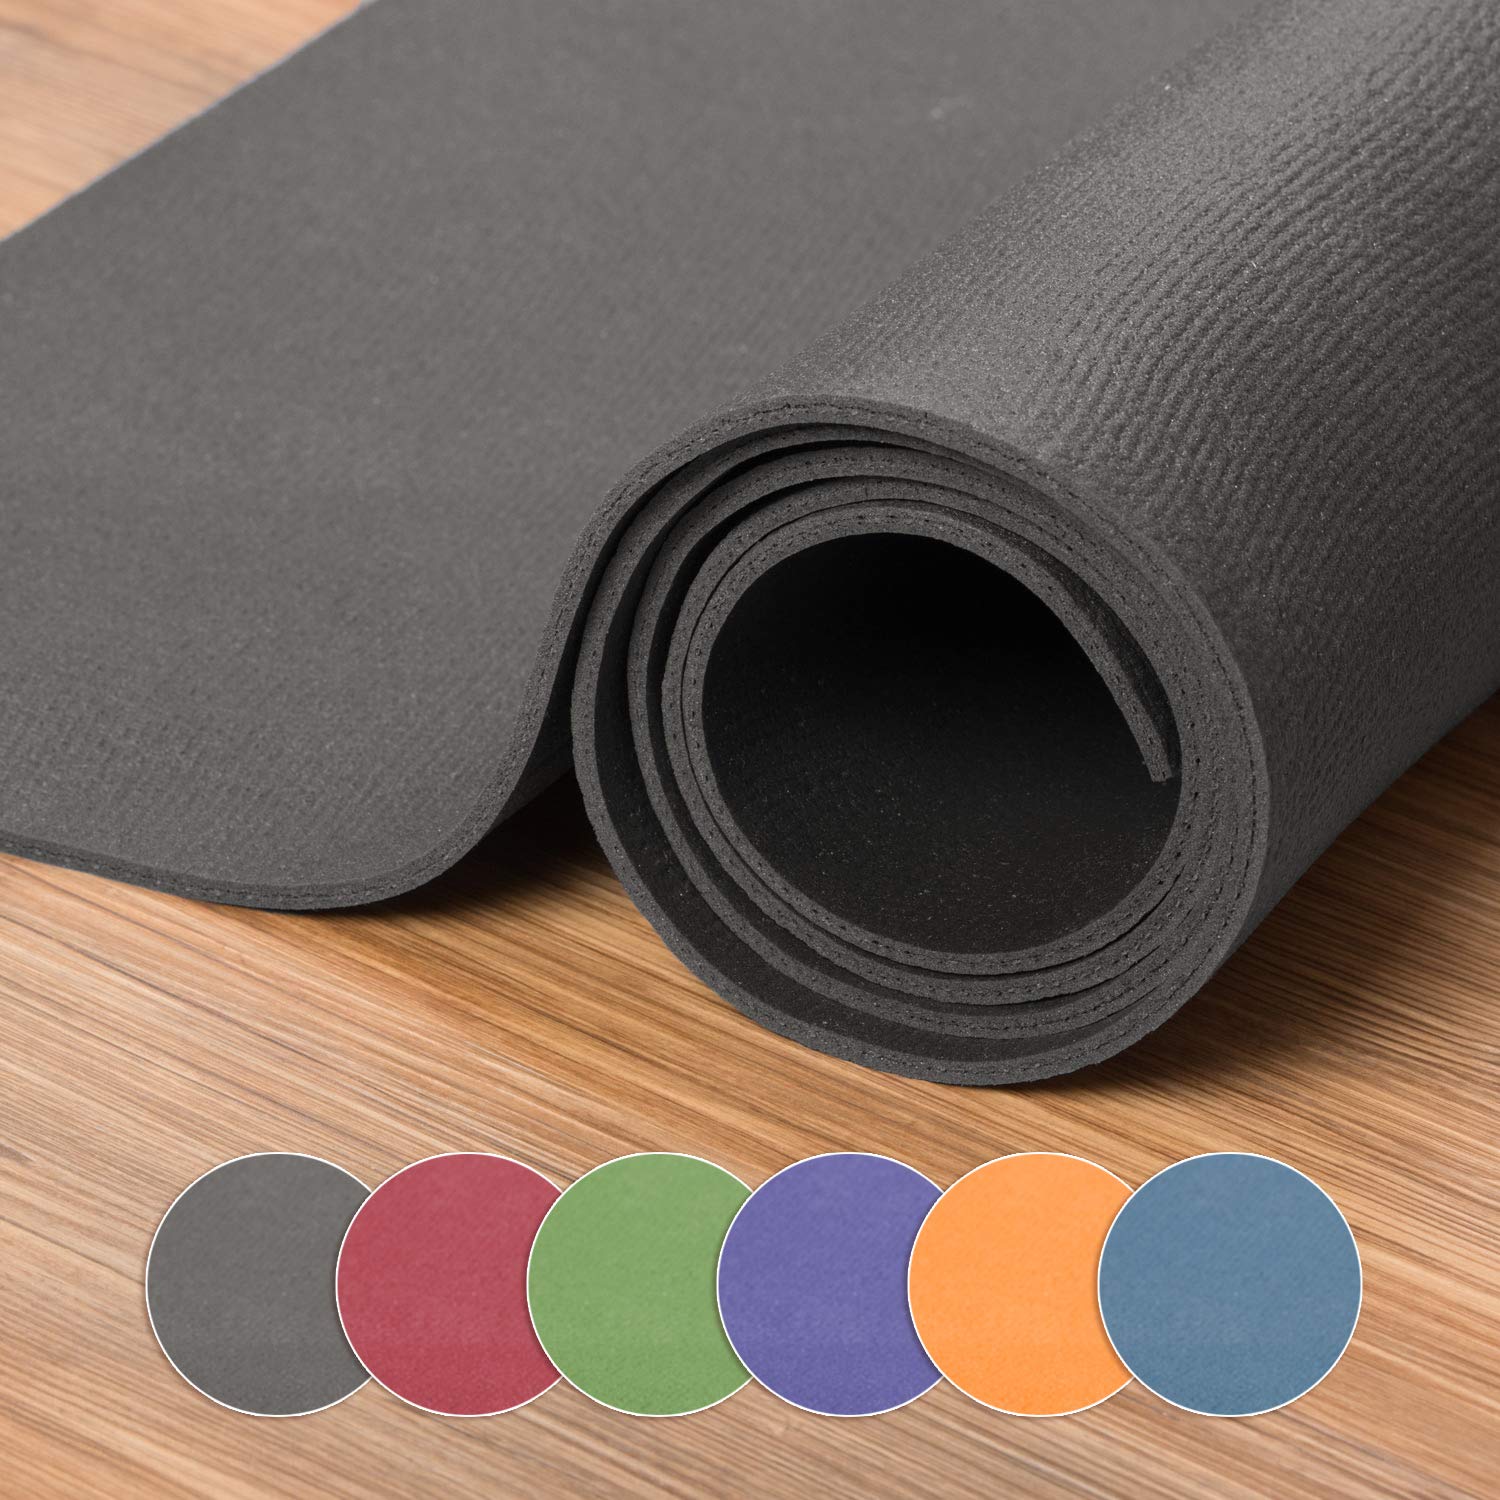 XXL Yogamatte in verschiedenen Farben + Größen, schadstofffreie Yogamatte in grau, besonders groß und breit, OEKO-Tex 100 zertifiziert und rutschfest